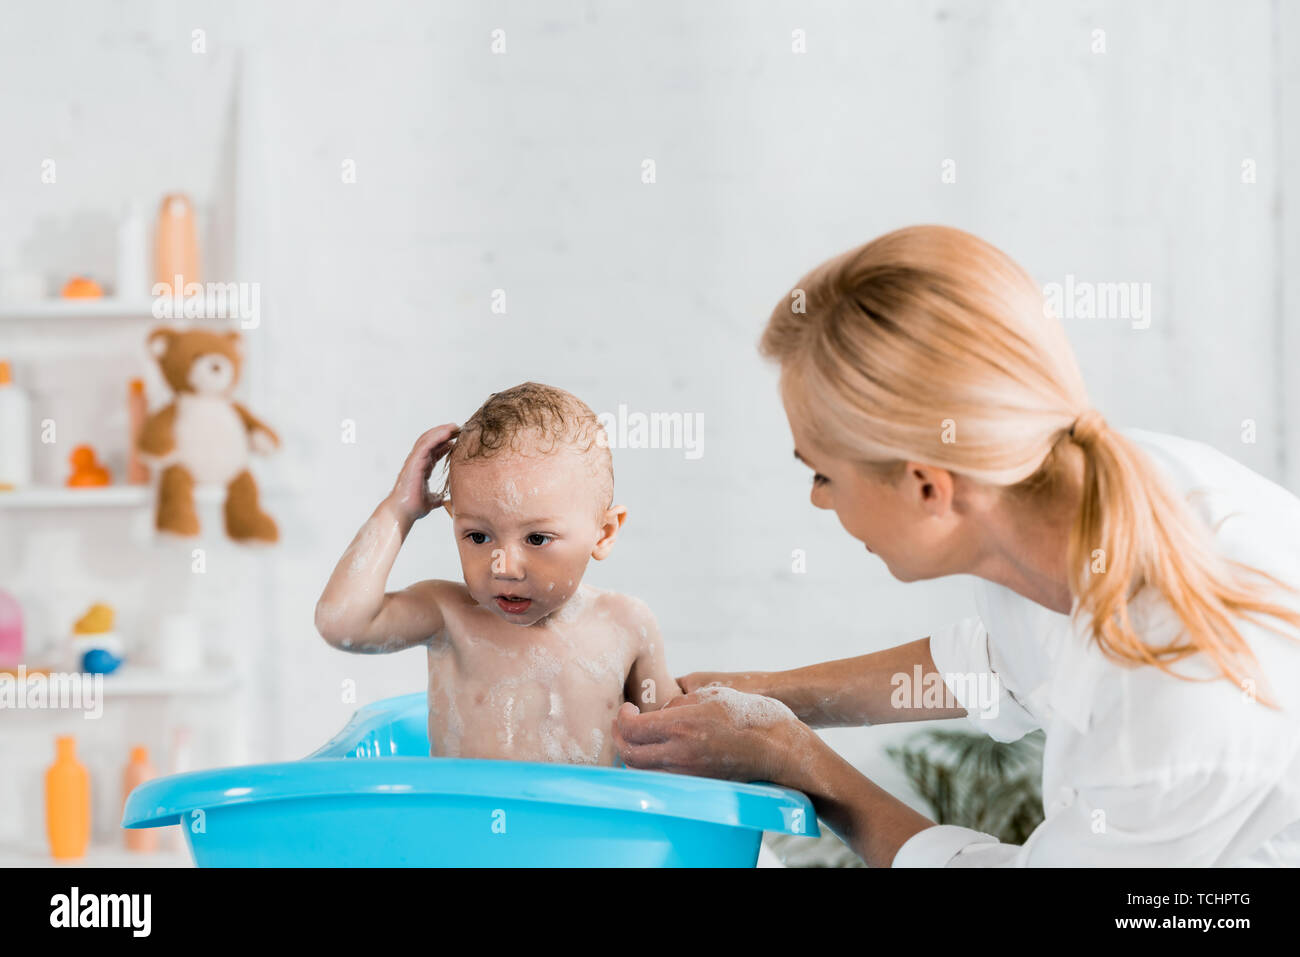 Мама в ванной 18. Помыла сына в ванной. Мама с сыном играют в ванной. Семейная эмоция радость в ванной комнате. Мама погружает сына в ванну.